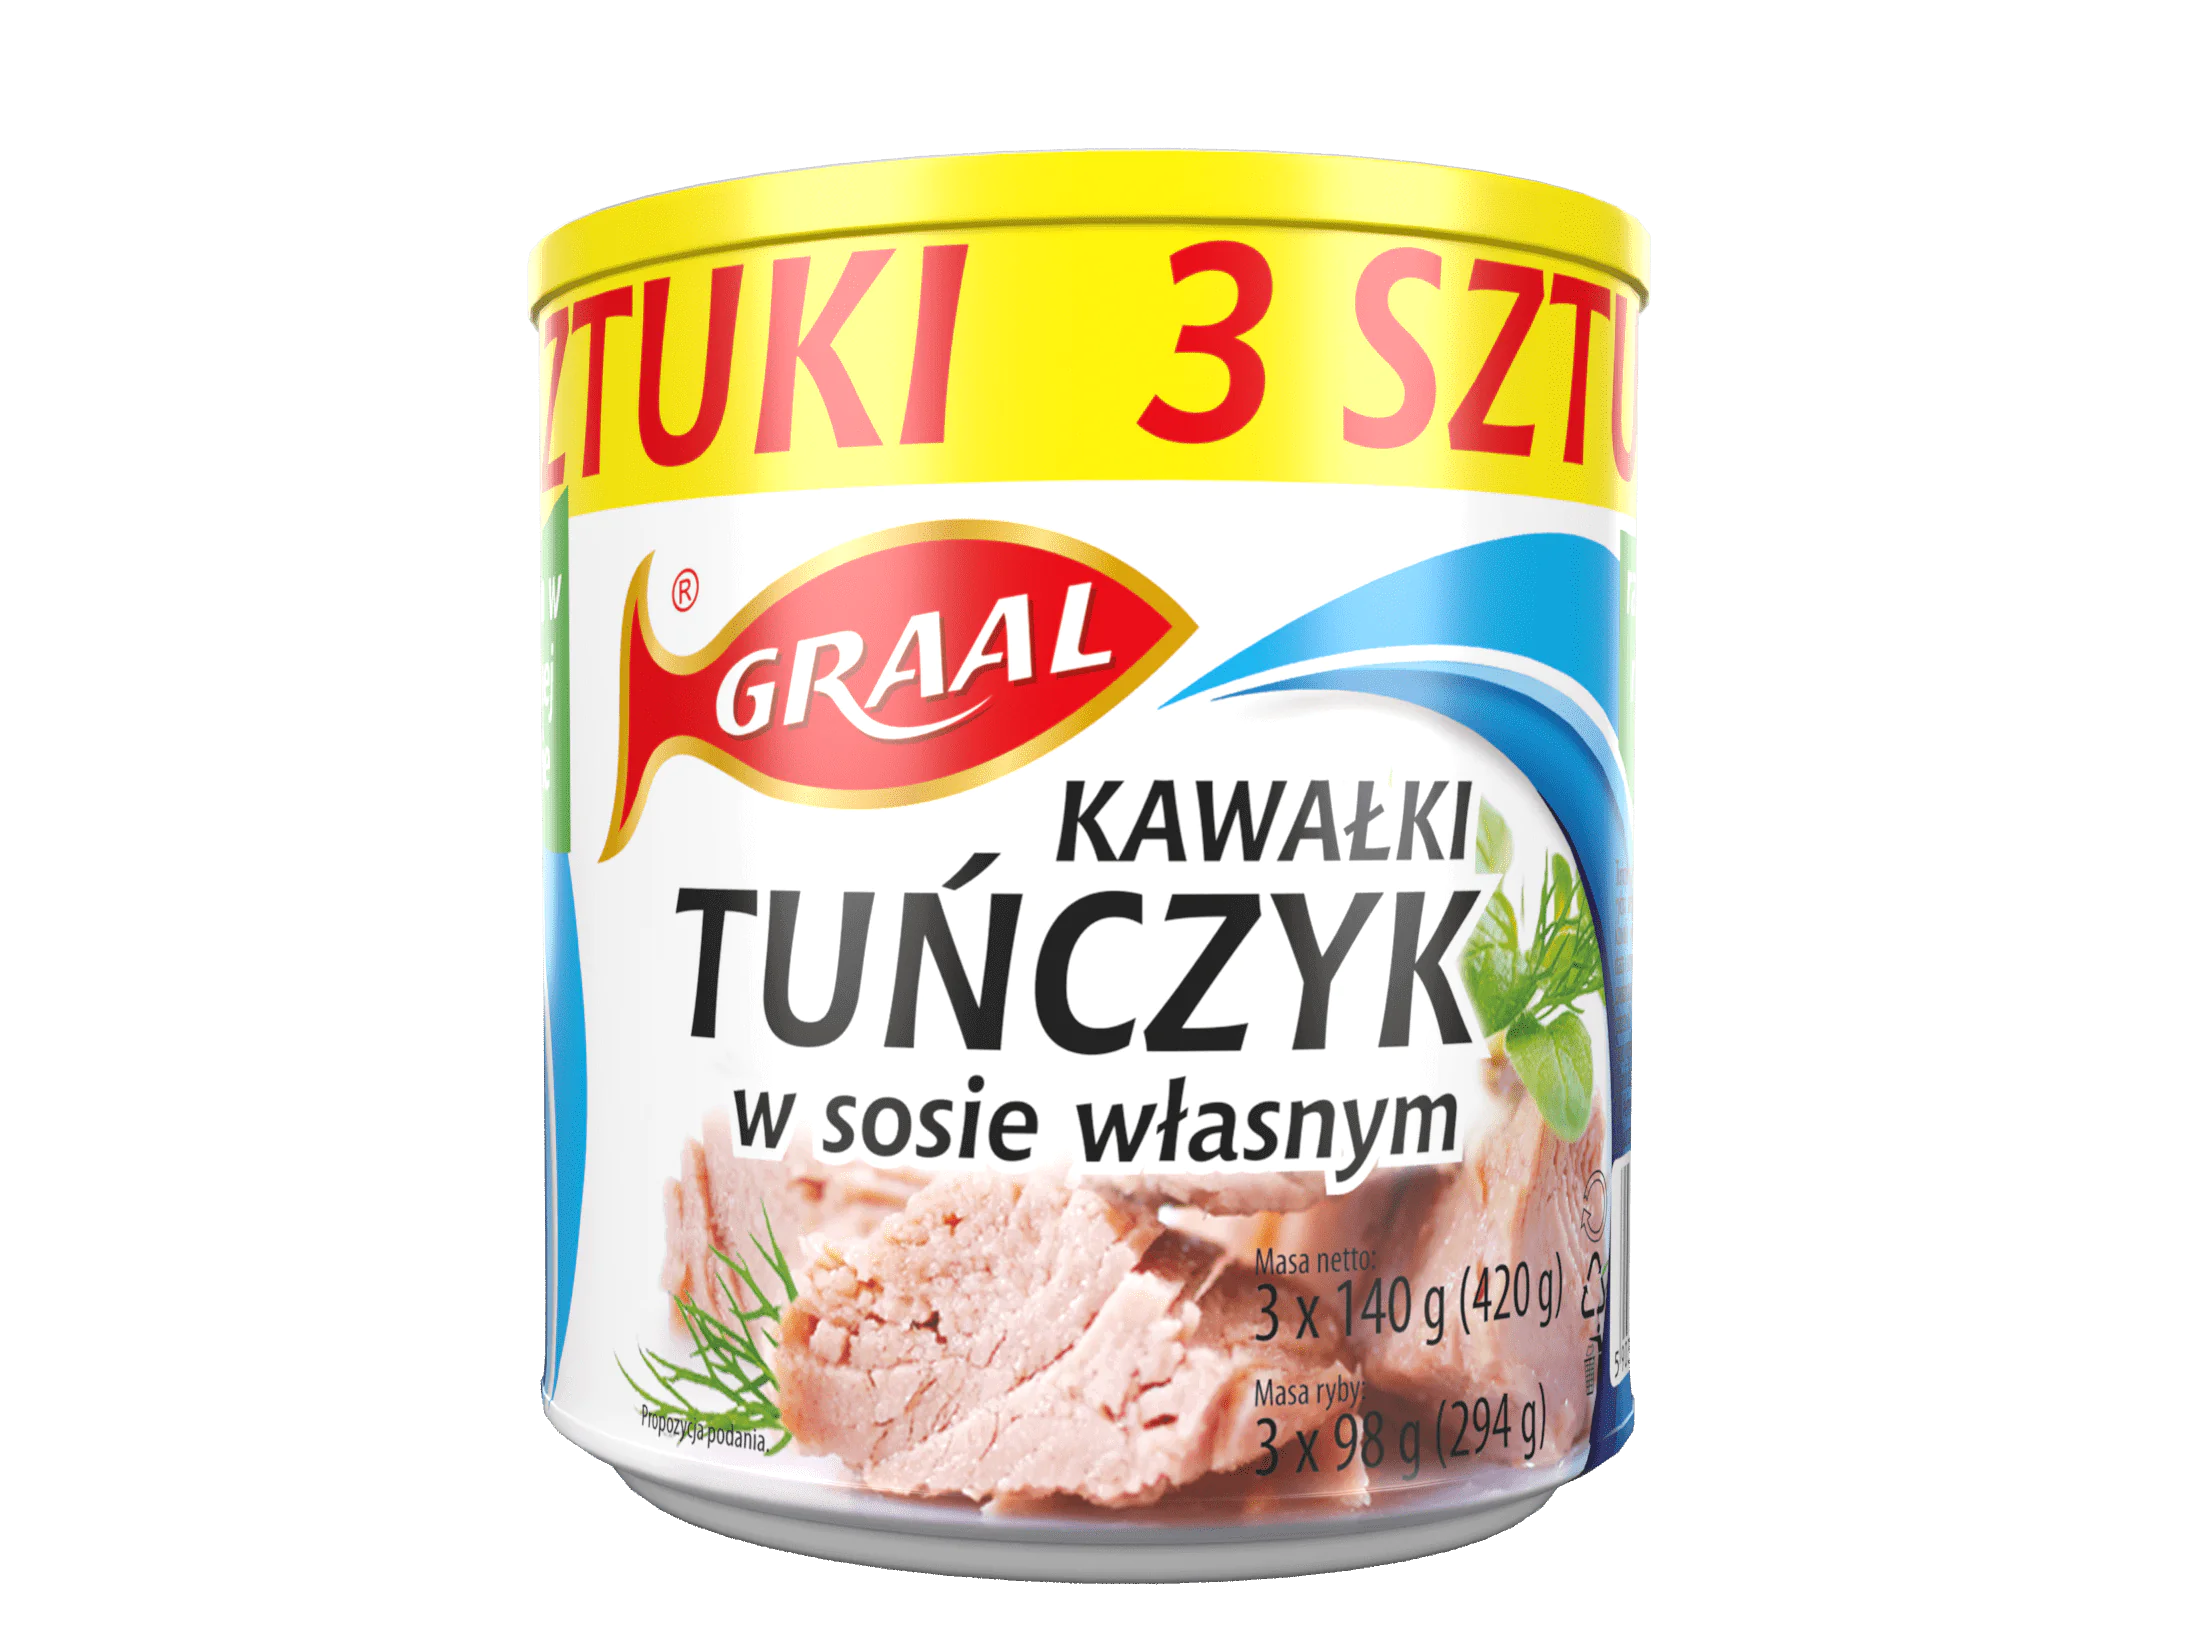 Kawałki tuńczyk w sosie własnym 3x140g